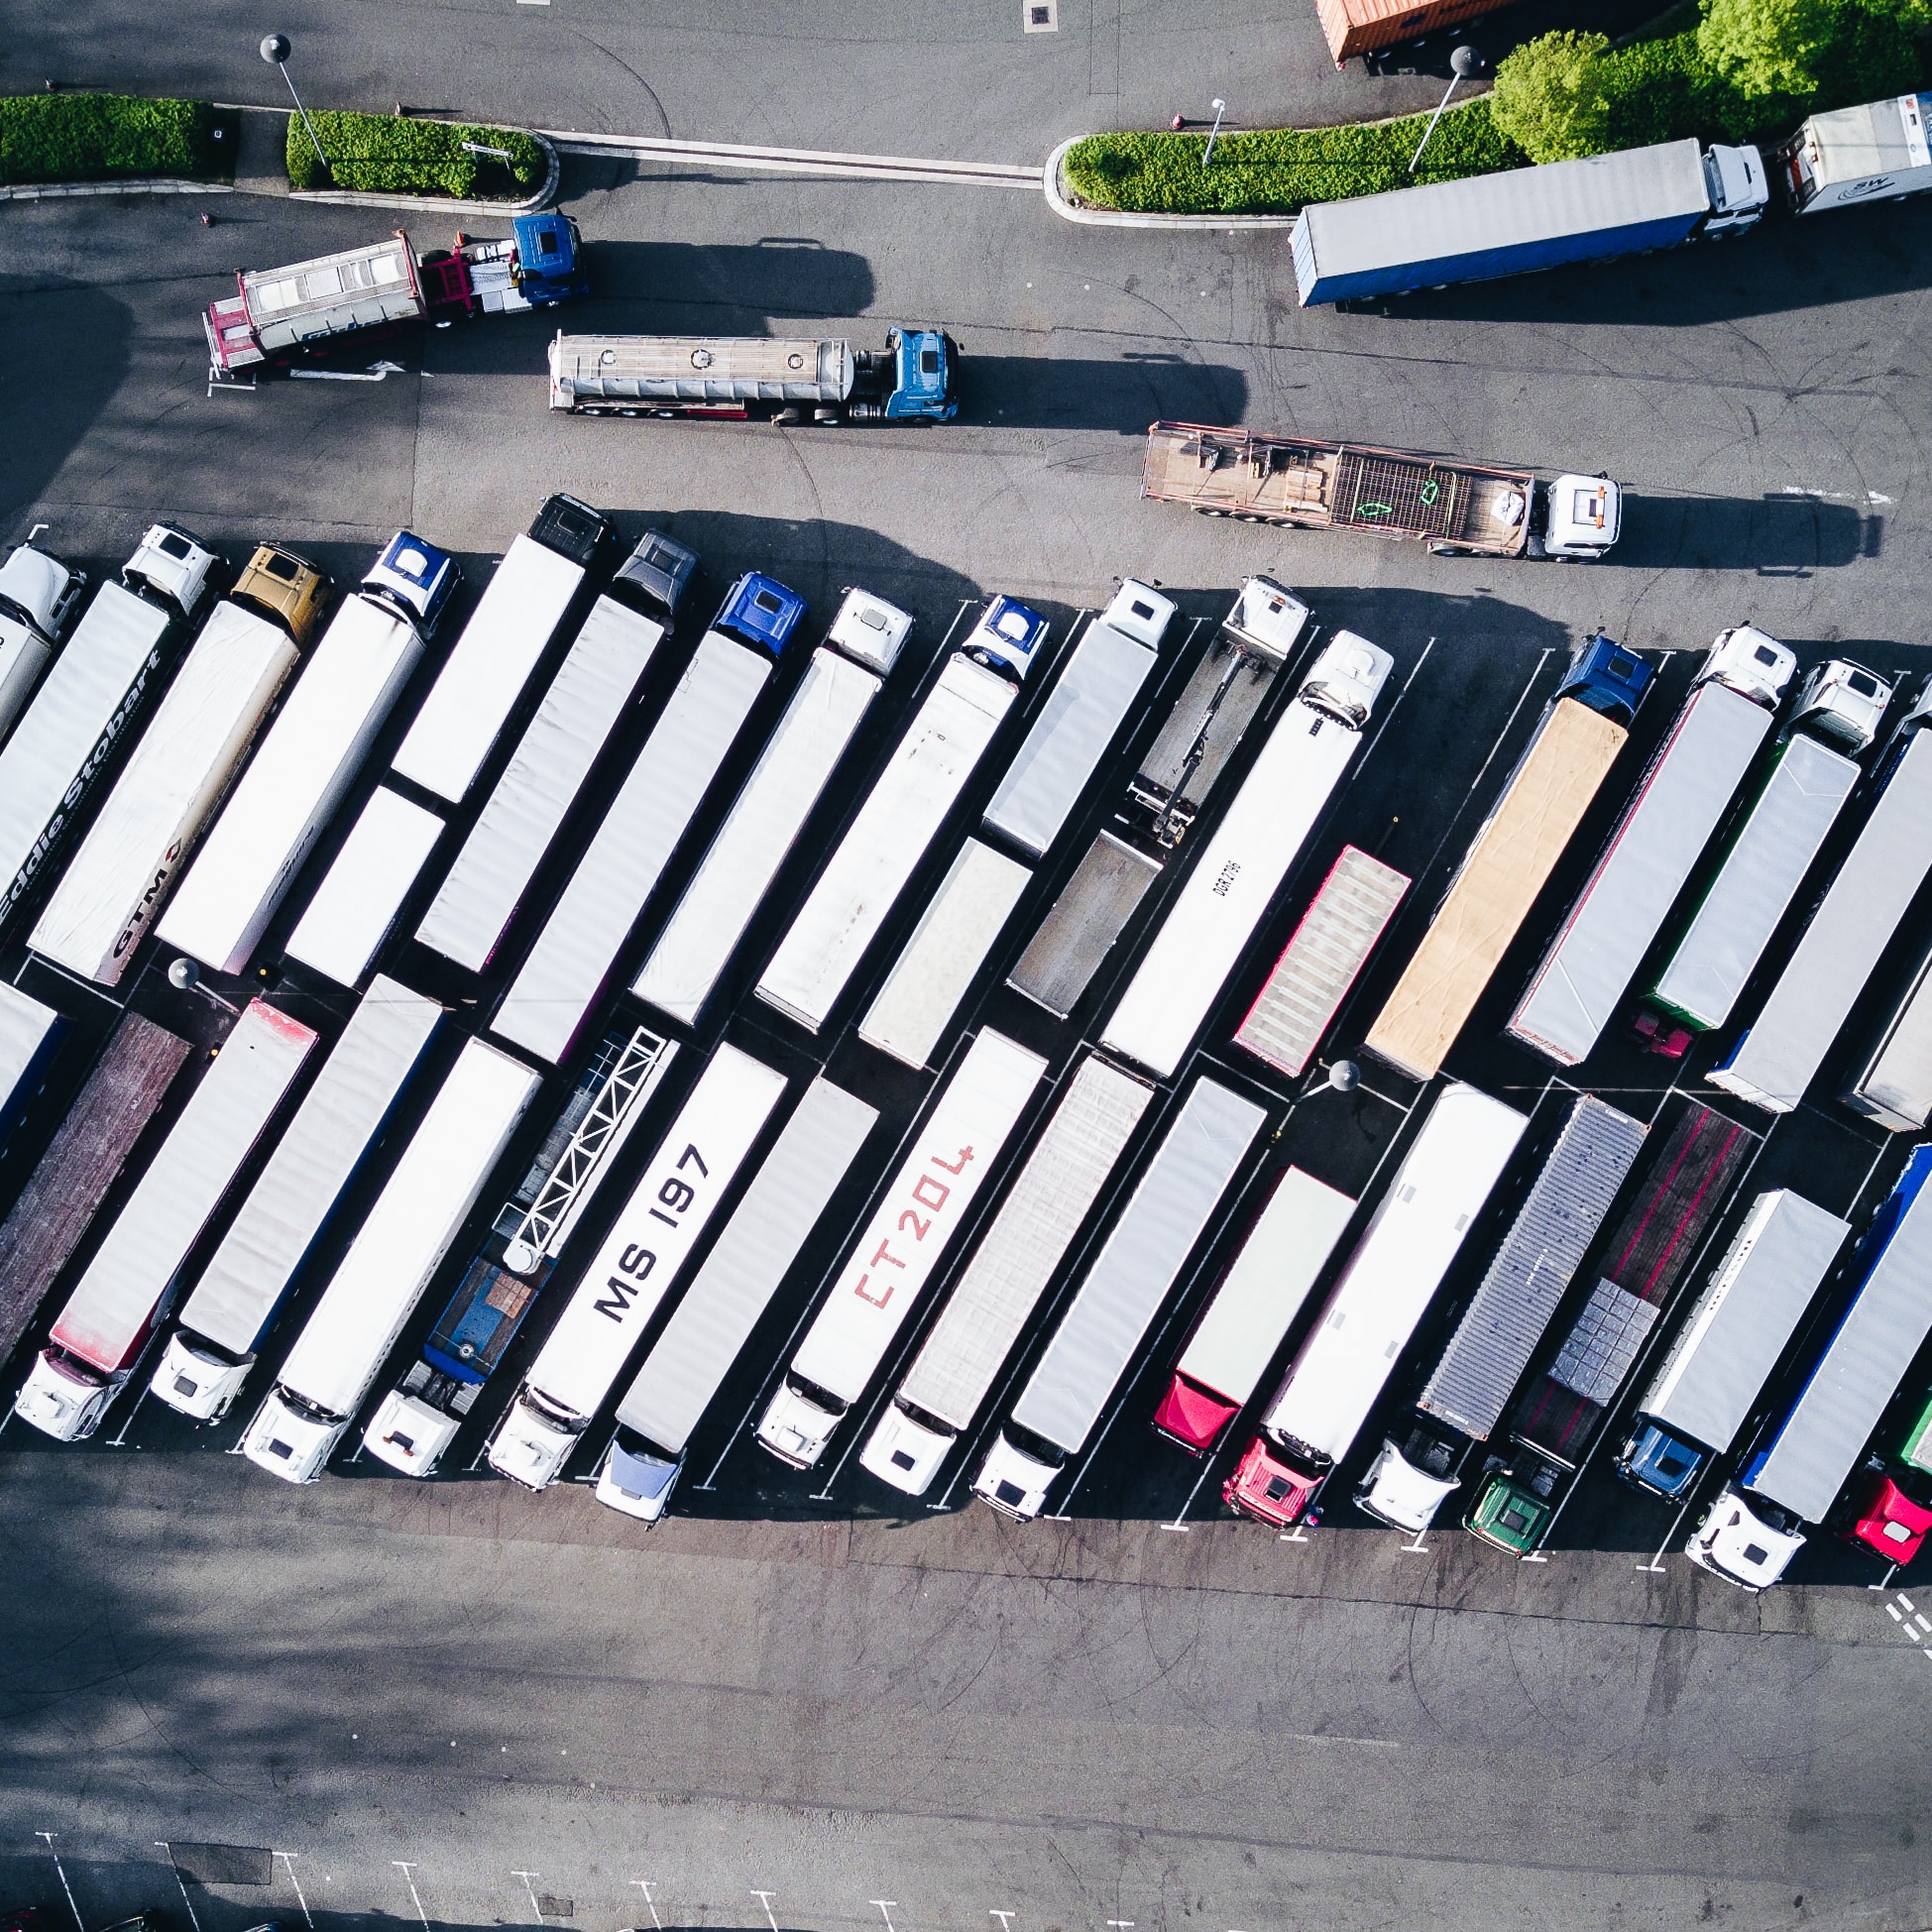 A parking lot of 18-wheeler trucks